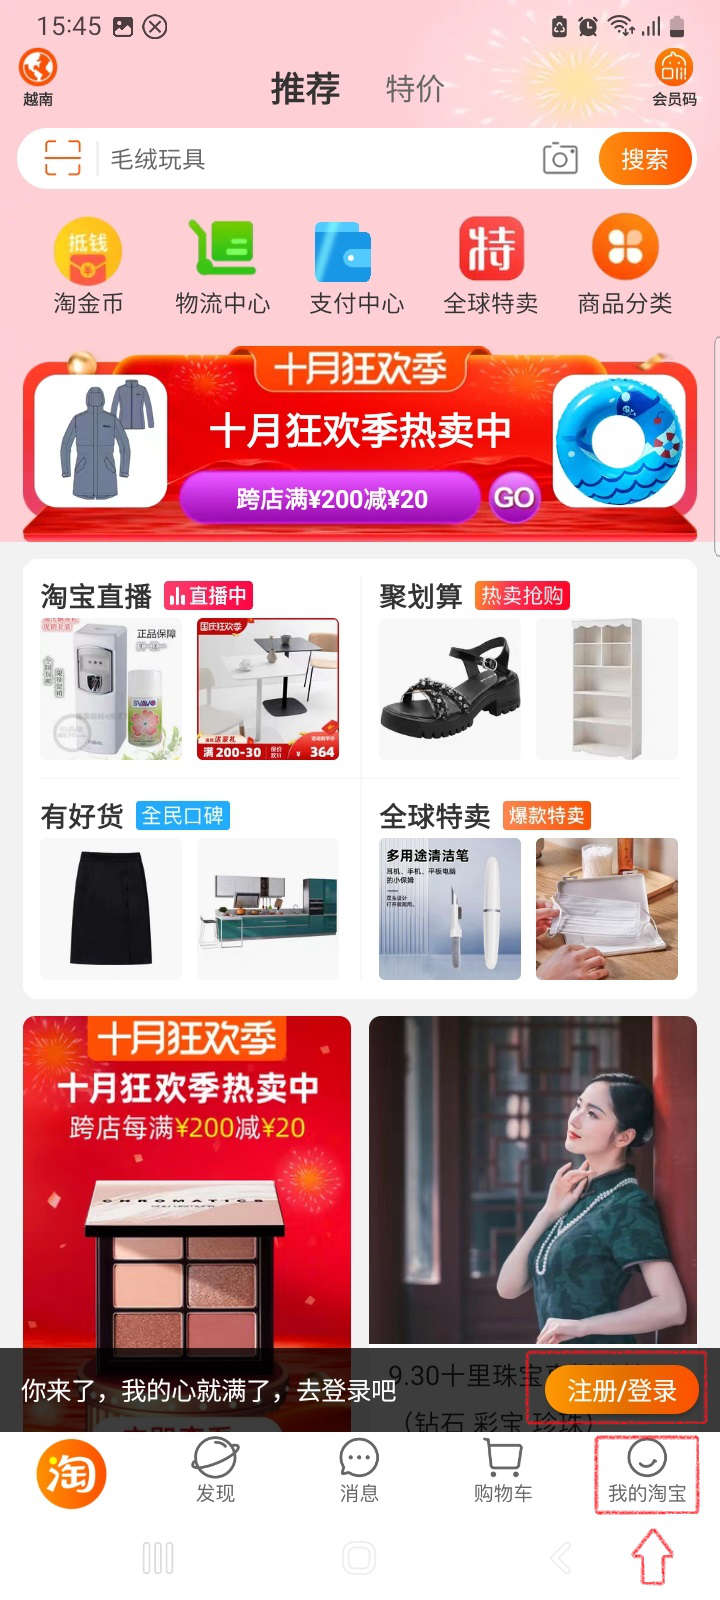 Cách đăng nhập Taobao trên điện thoại